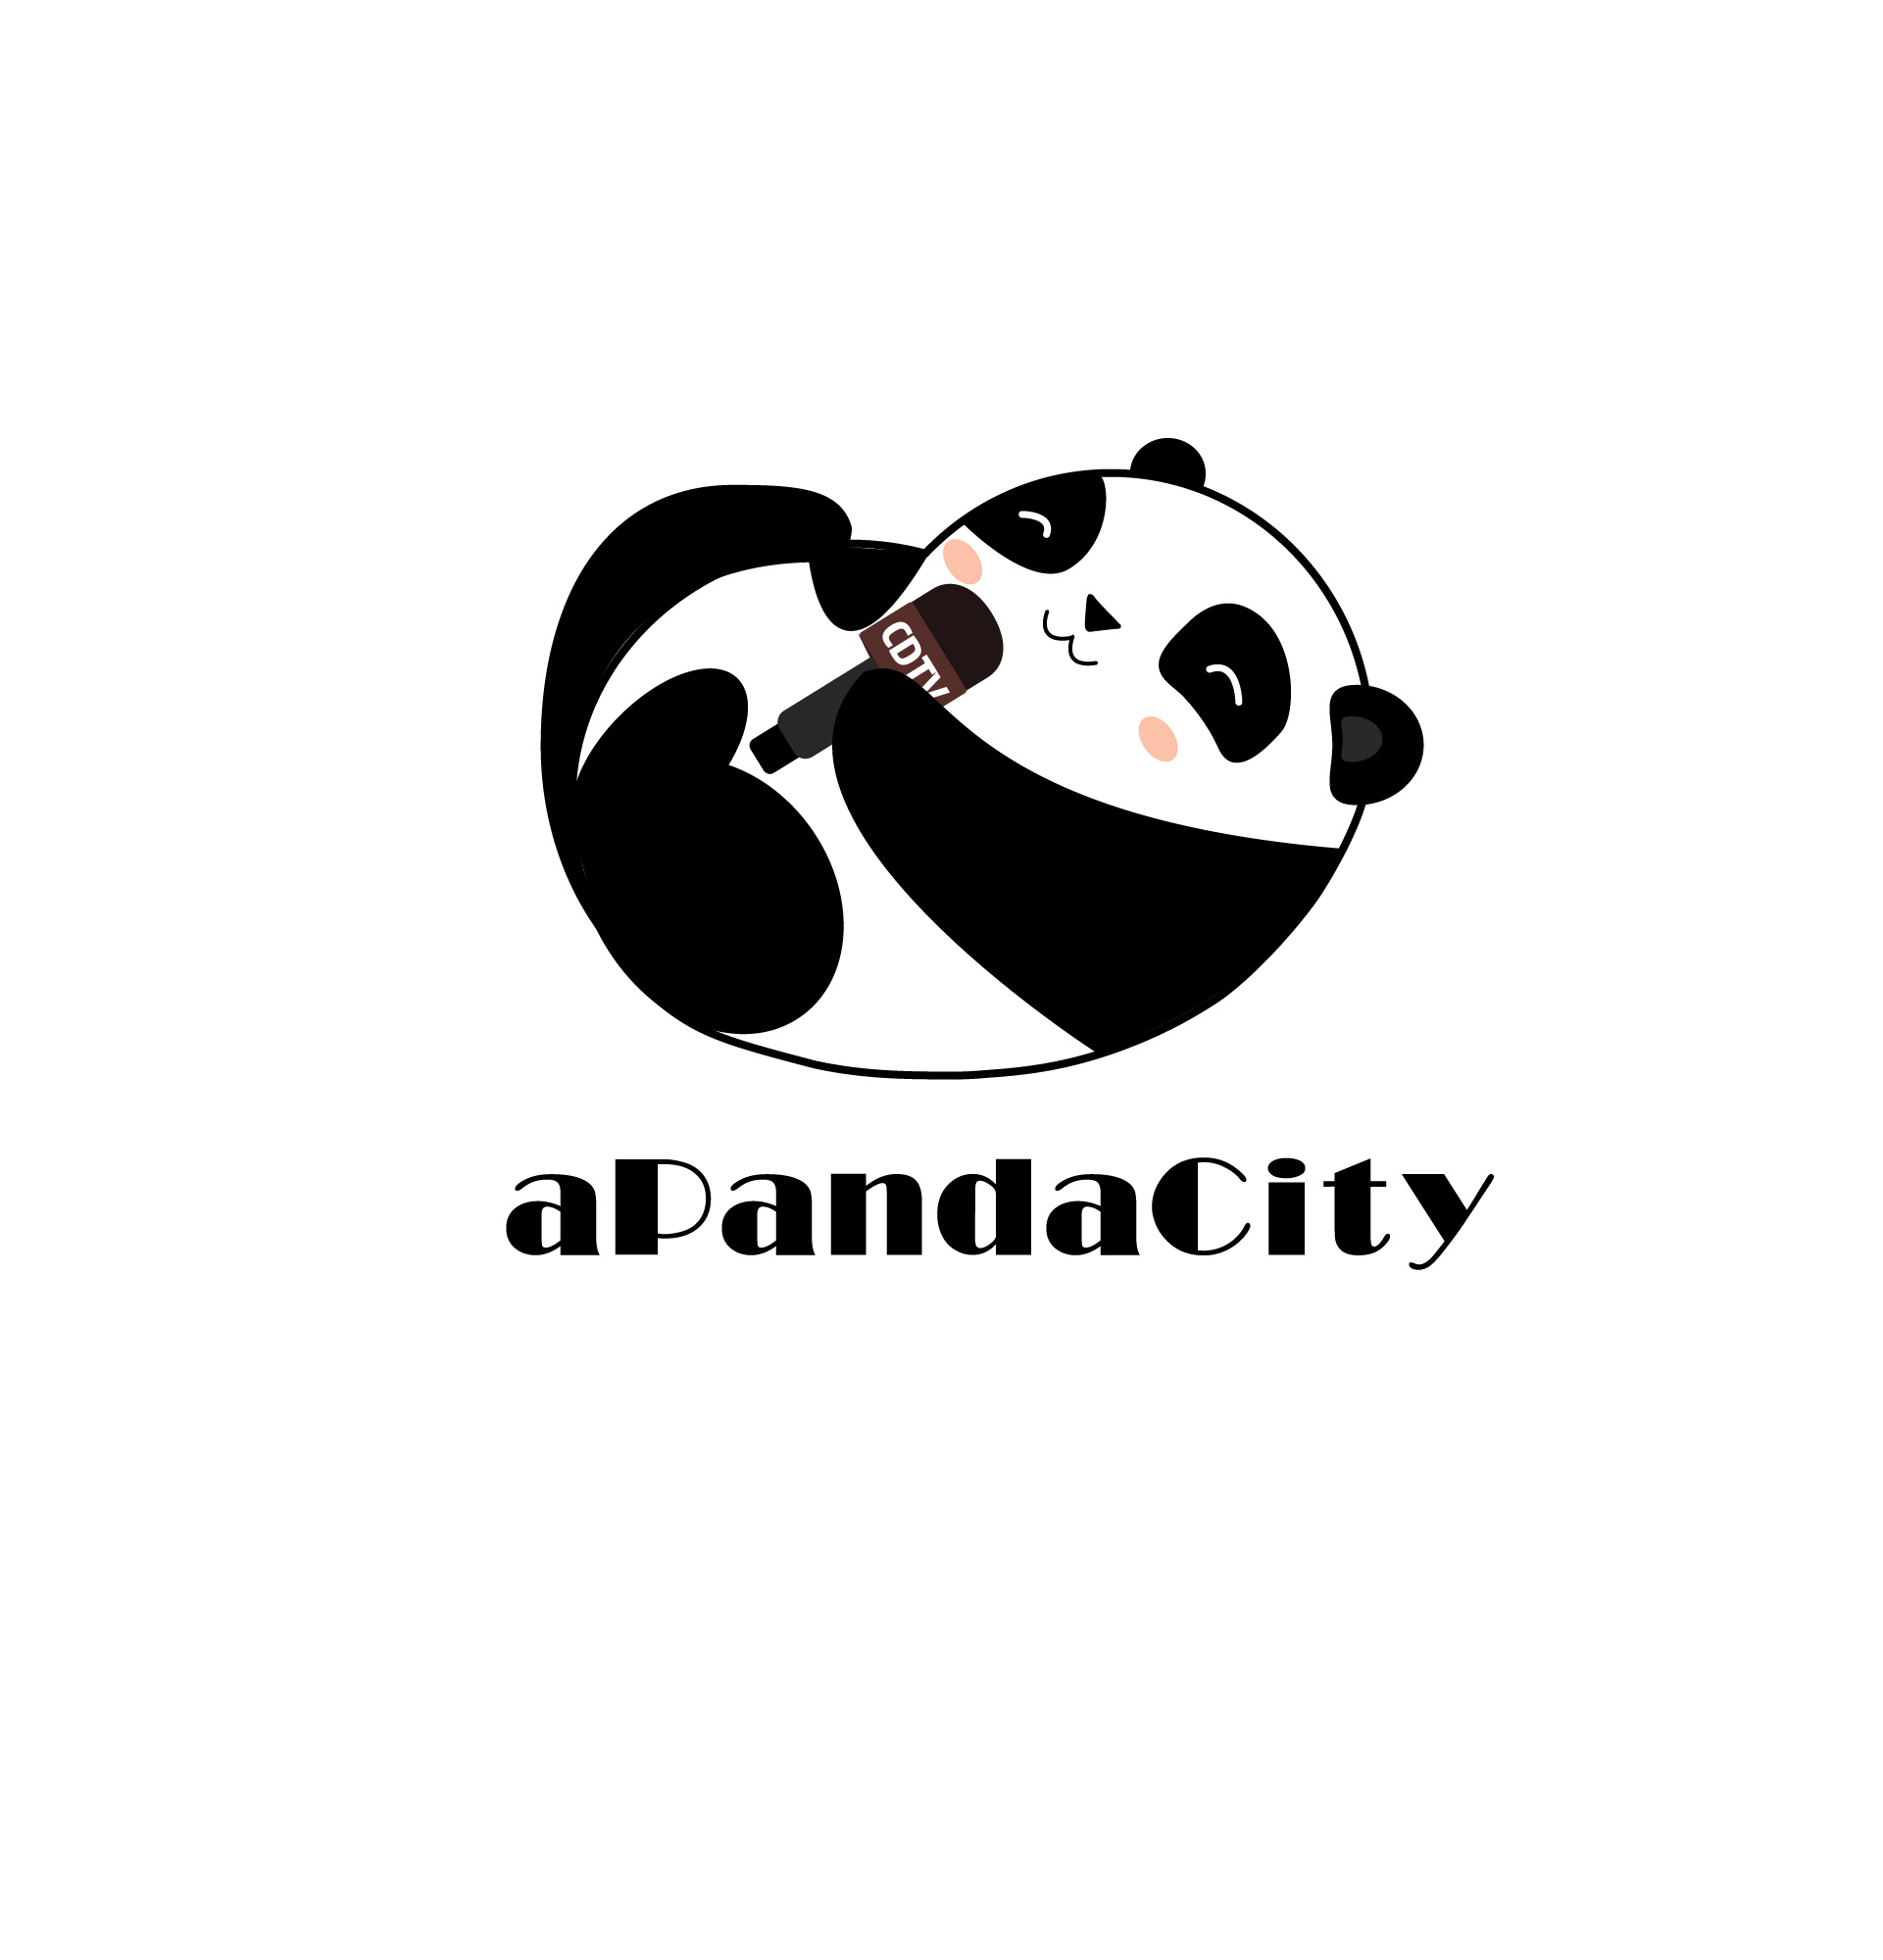 logo图片大全卡通熊猫图片